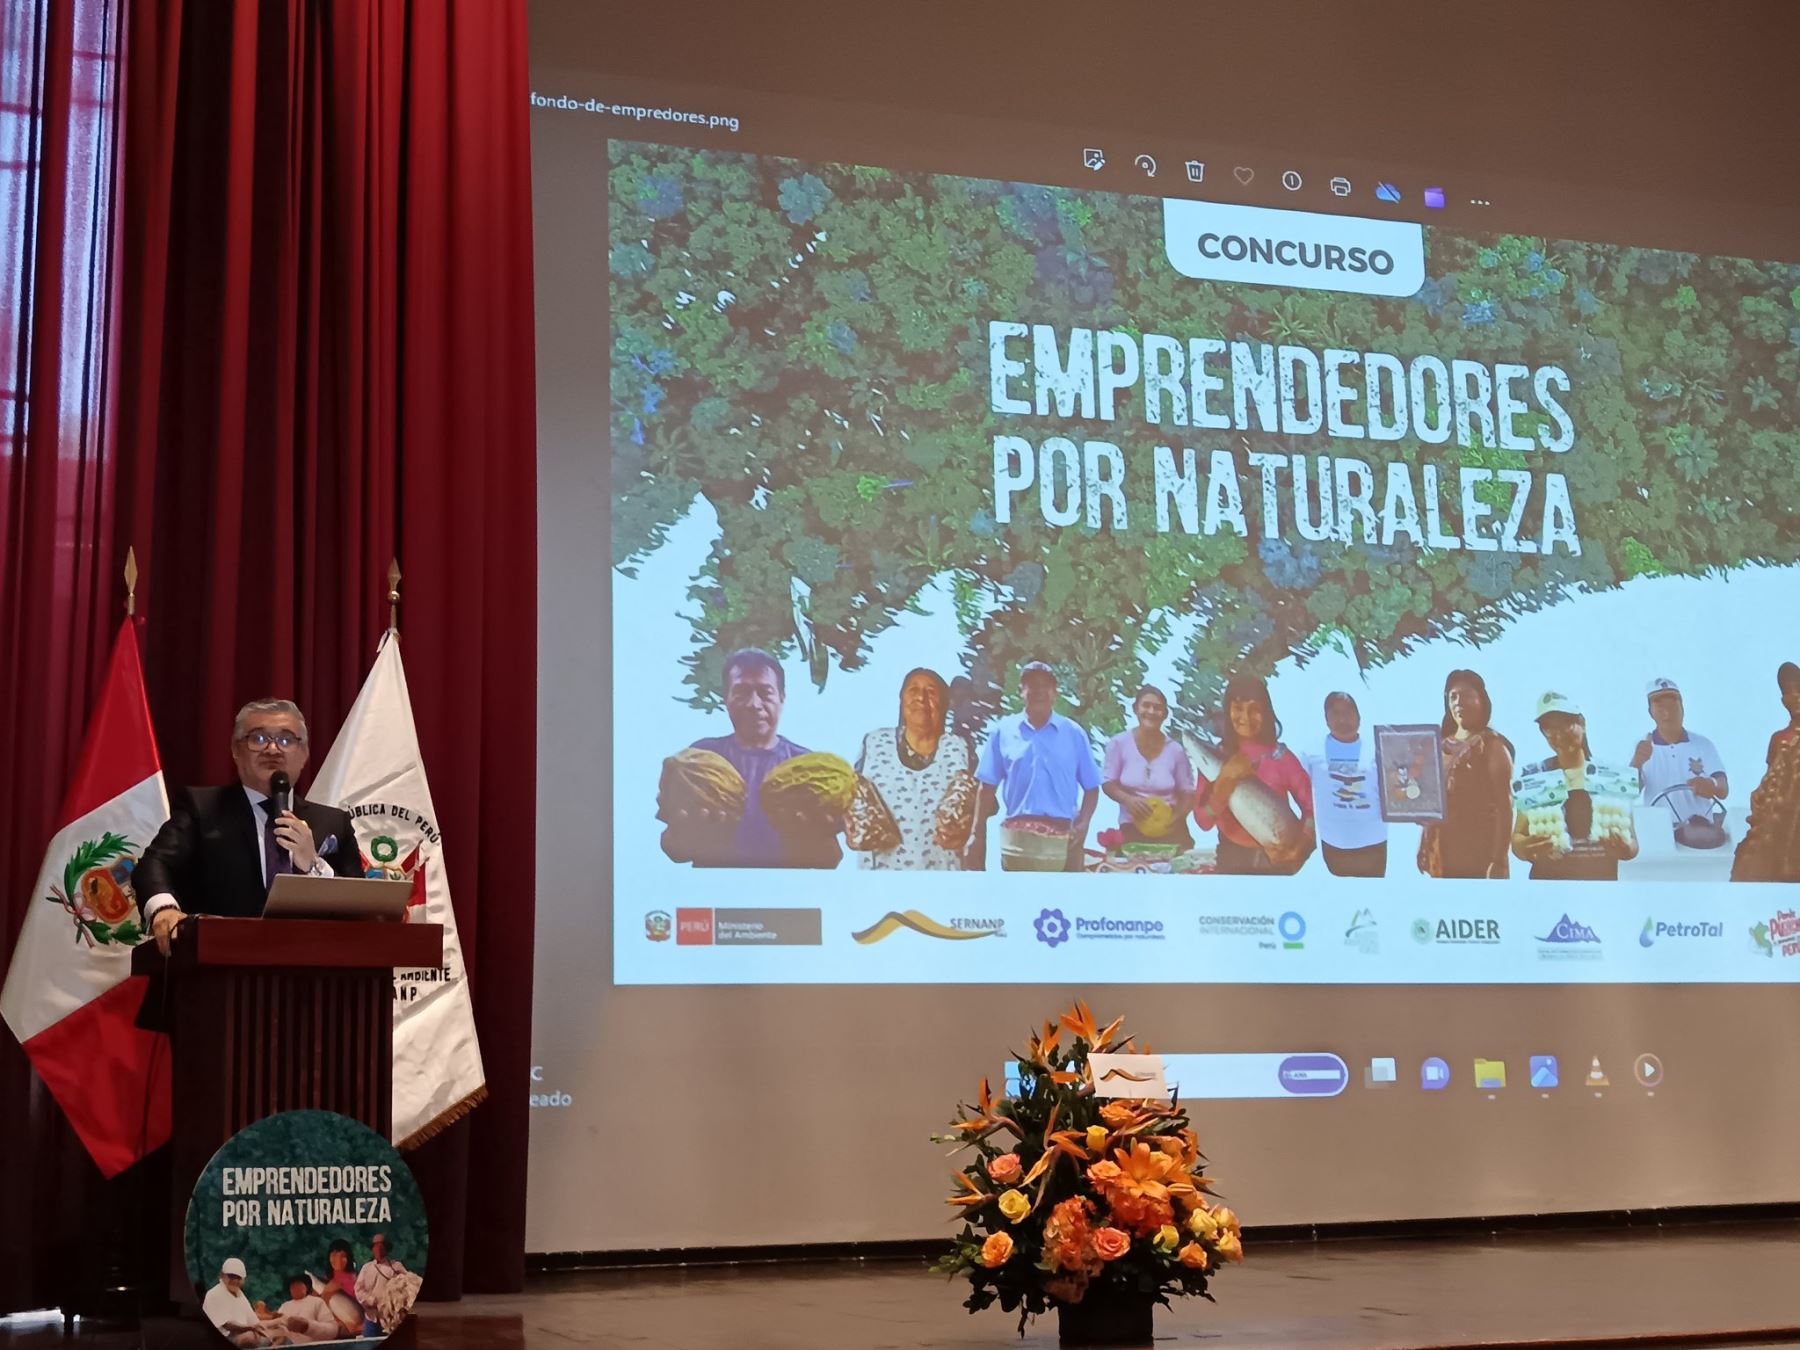 Con concurso "Emprendedores por naturaleza" se busca impulsar las iniciativas de las comunidades nativas ubicadas en áreas naturales protegidas, afirmó el ministro del Ambiente, Juan Castro Vargas. ANDINA/Difusión